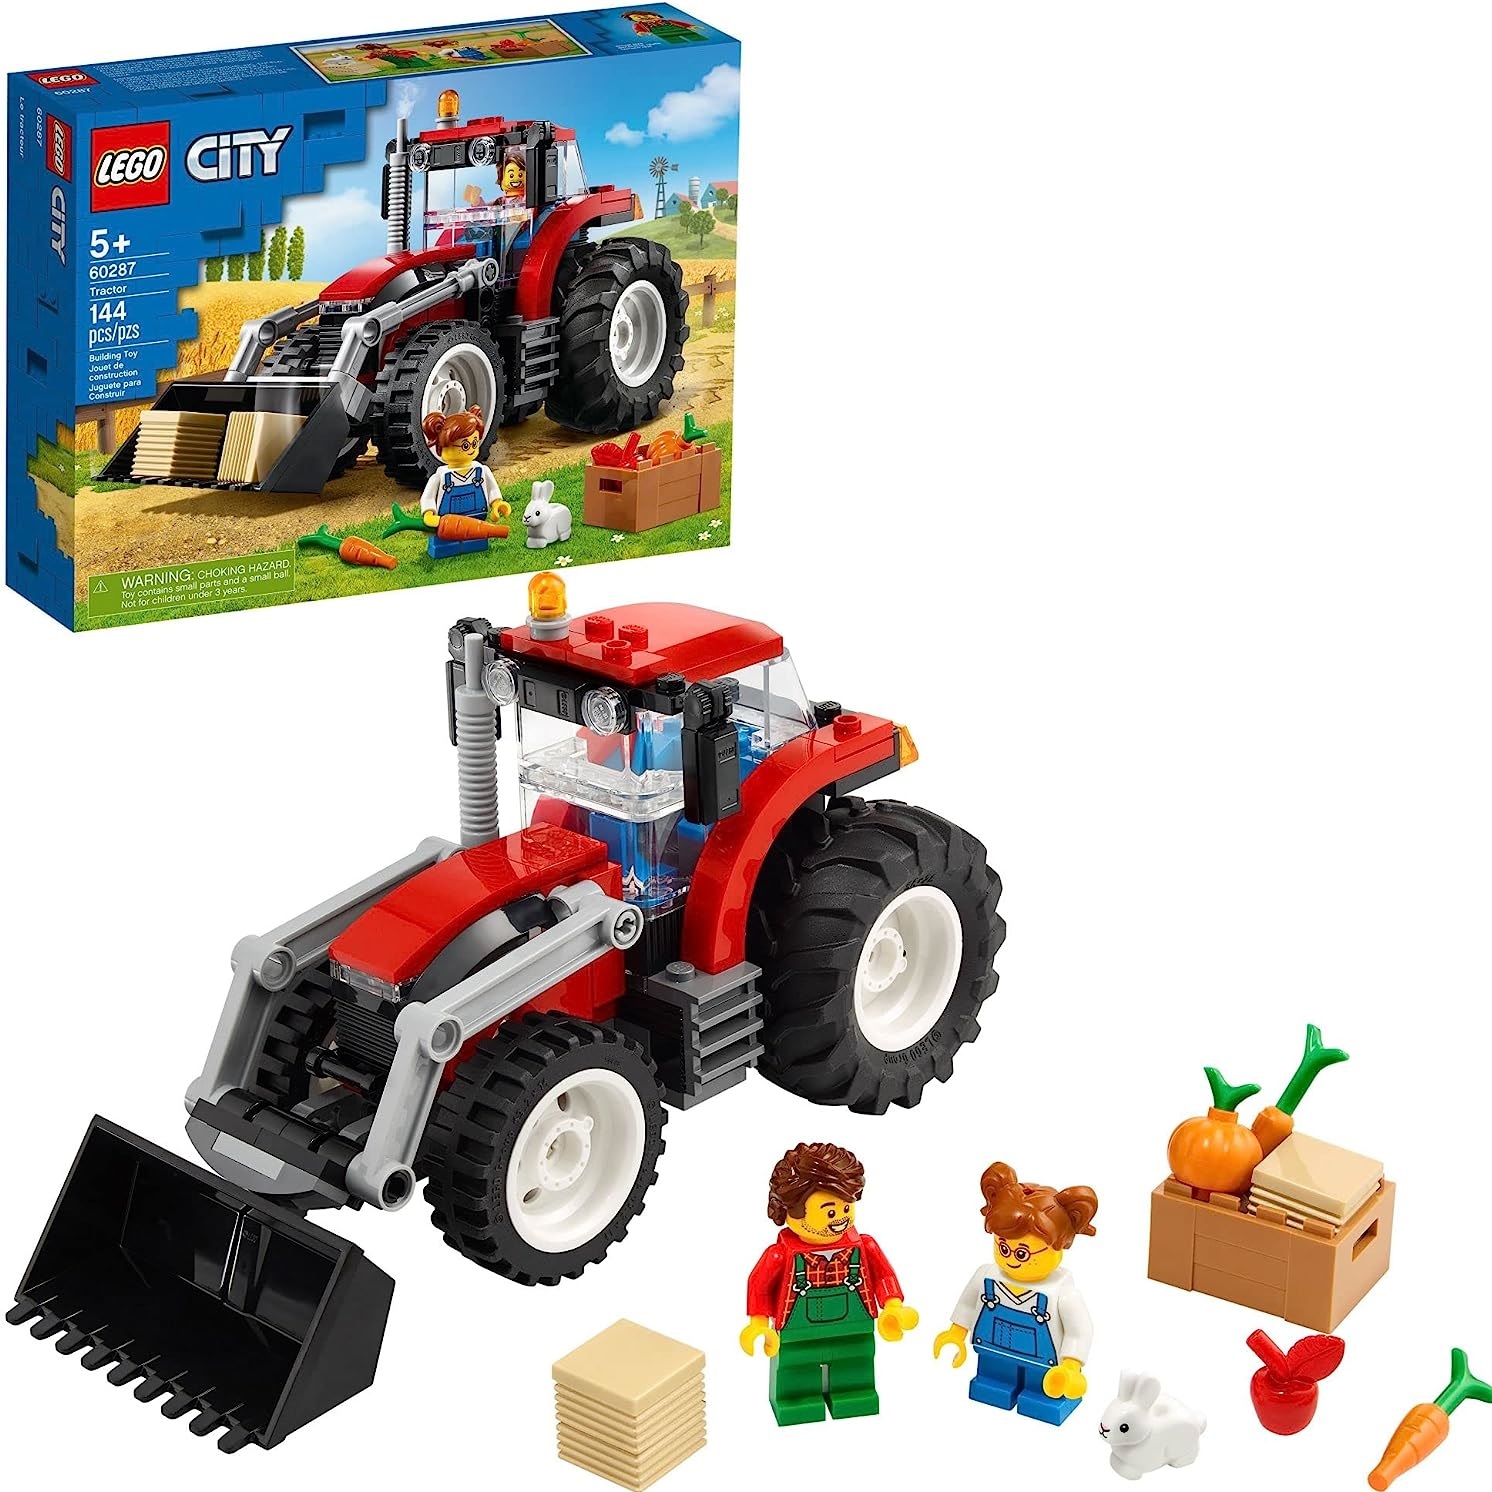 LEGO City 60287 - 